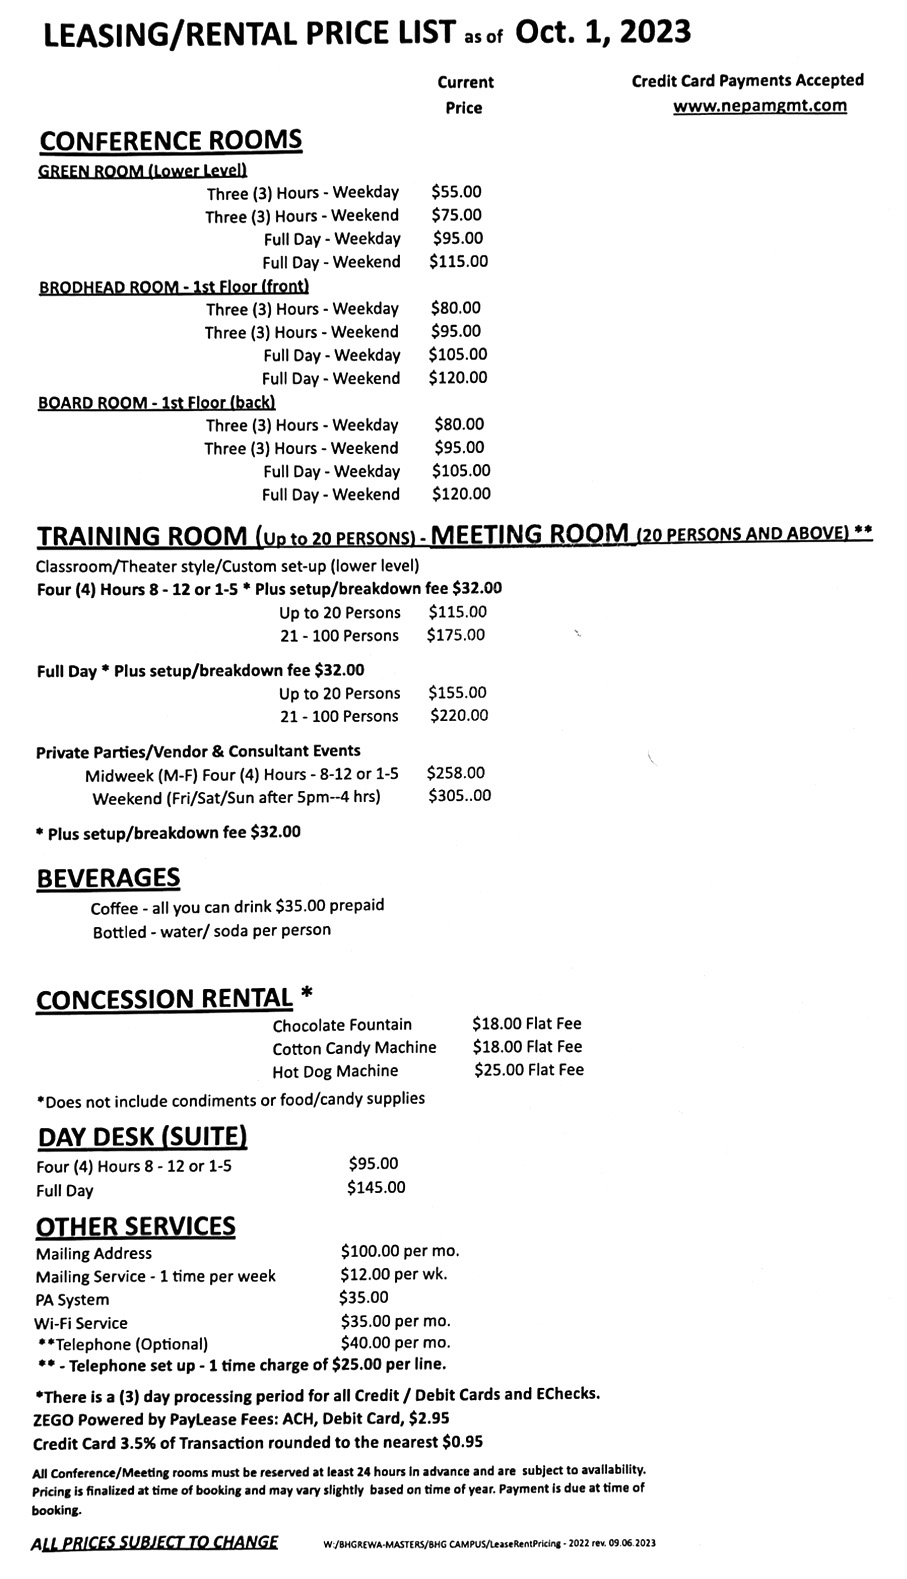 Meeting room rental pricing list